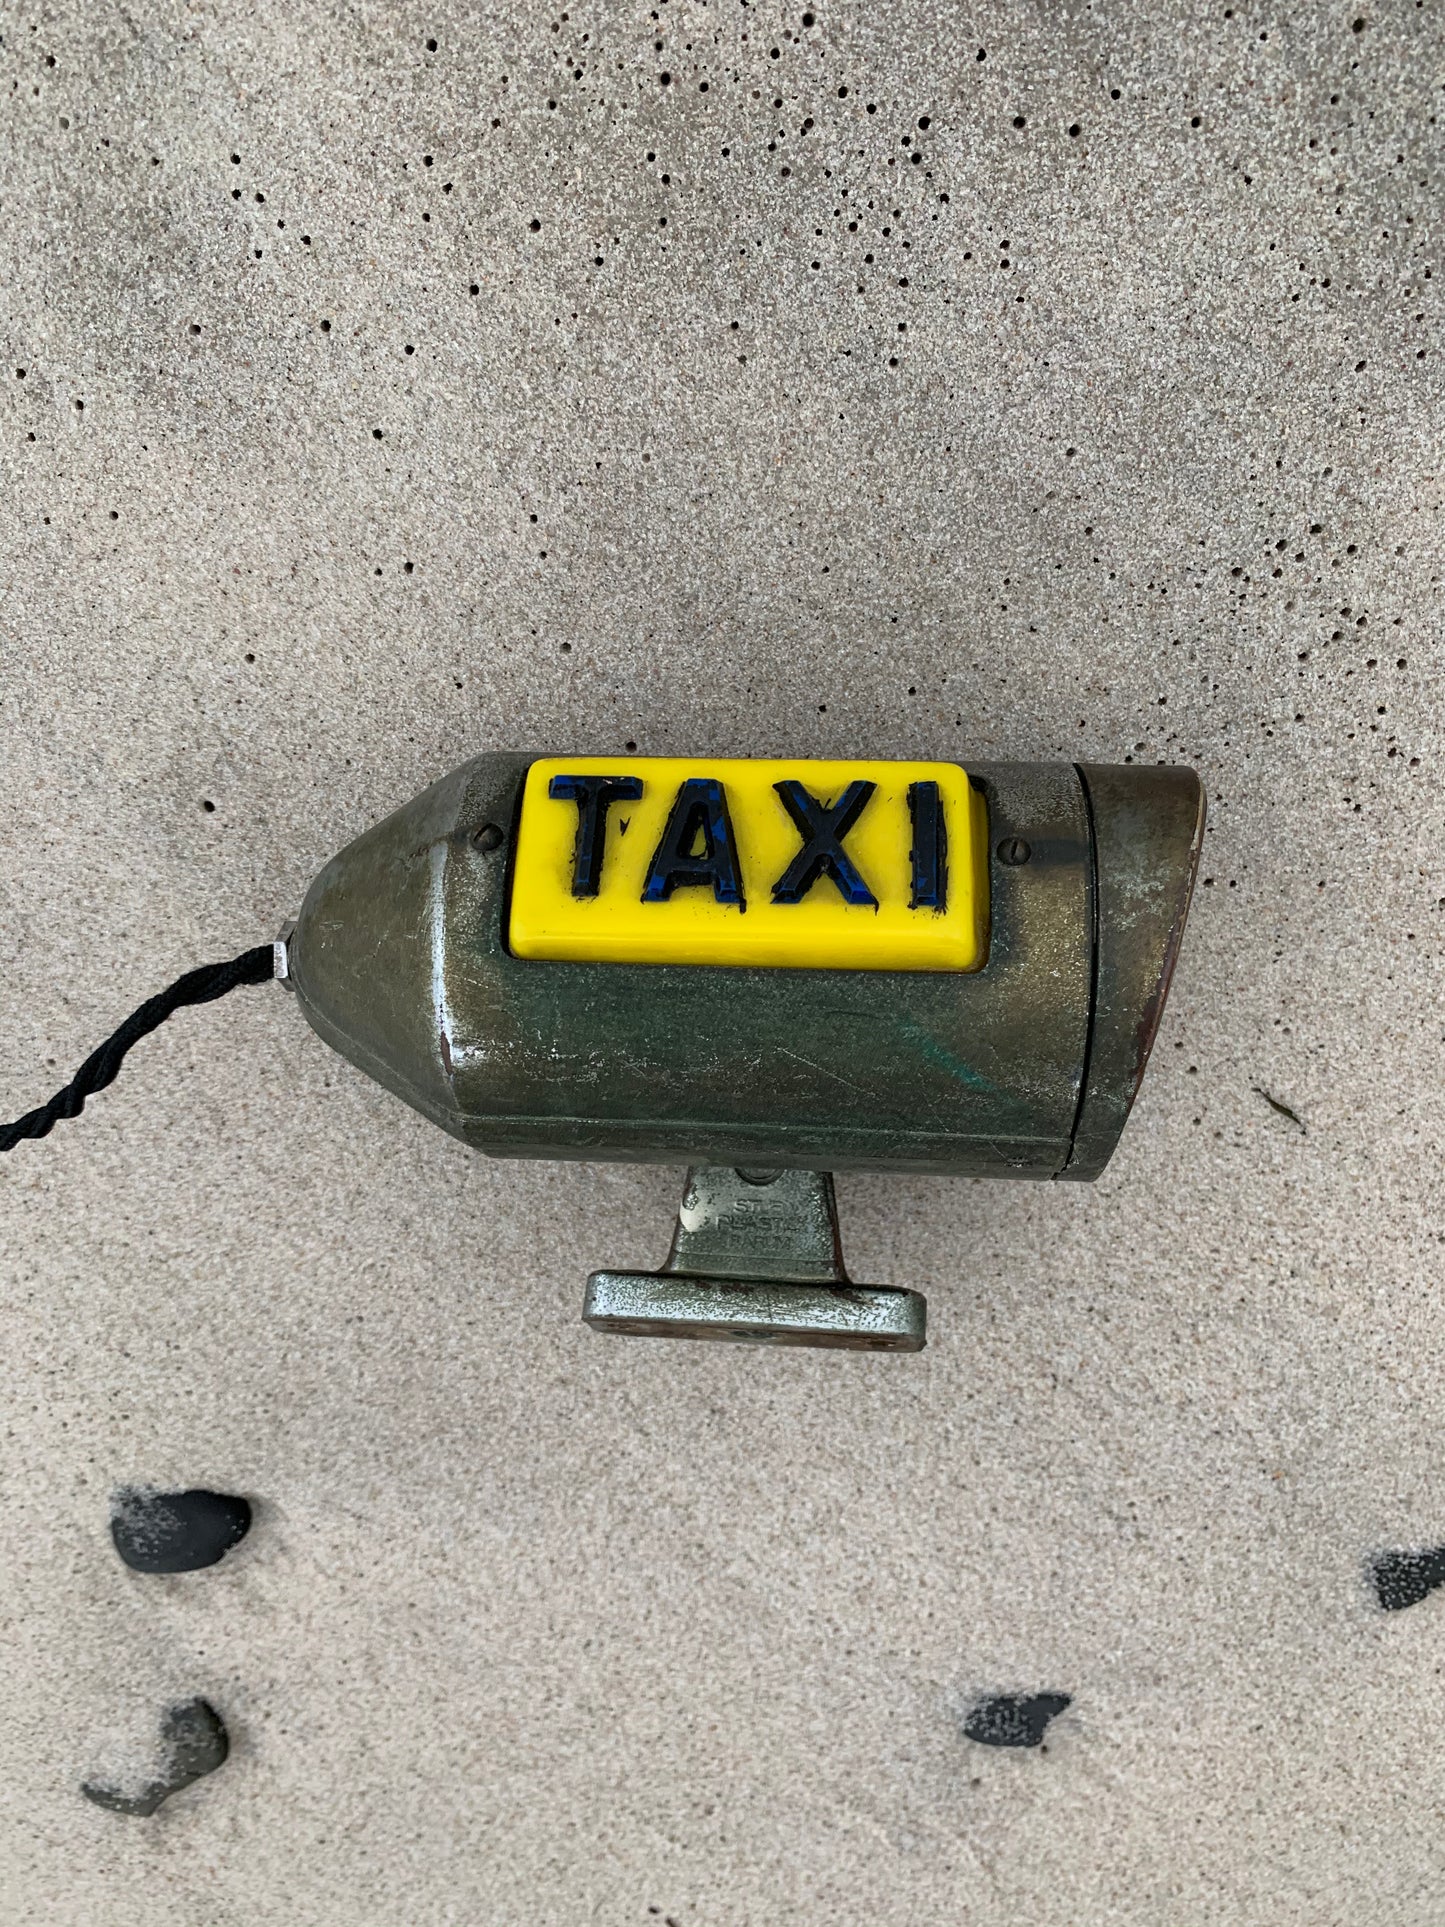 Taxi-Lichtschild